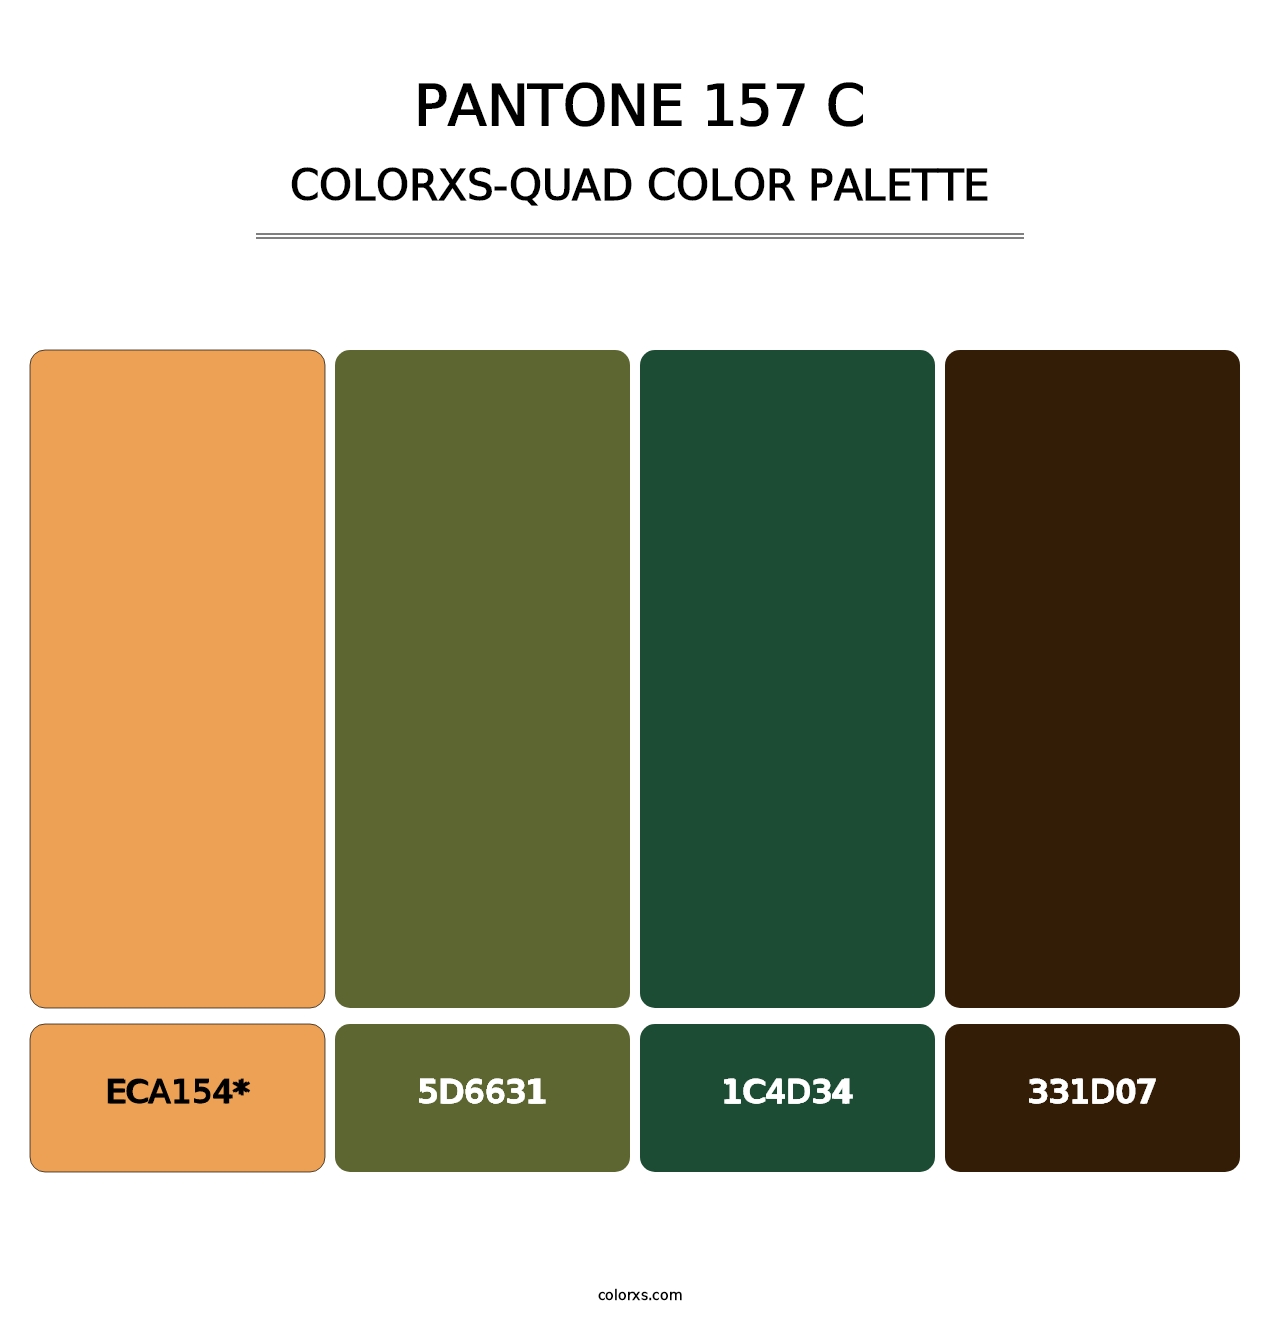 PANTONE 157 C - Colorxs Quad Palette